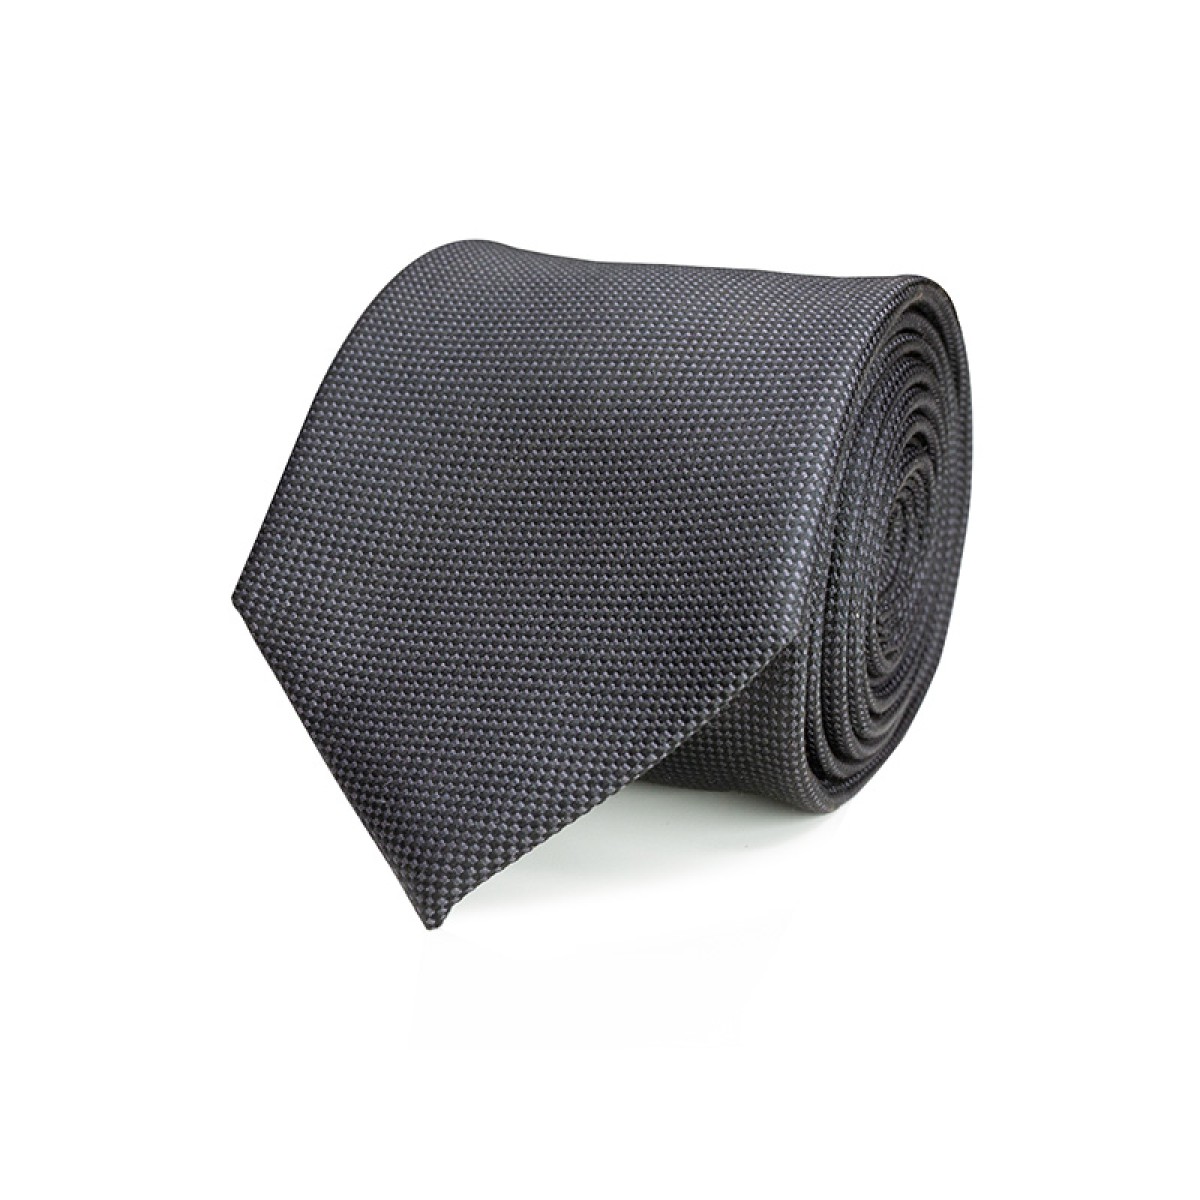 Necktie - silk - black - 7.5cm - NOS